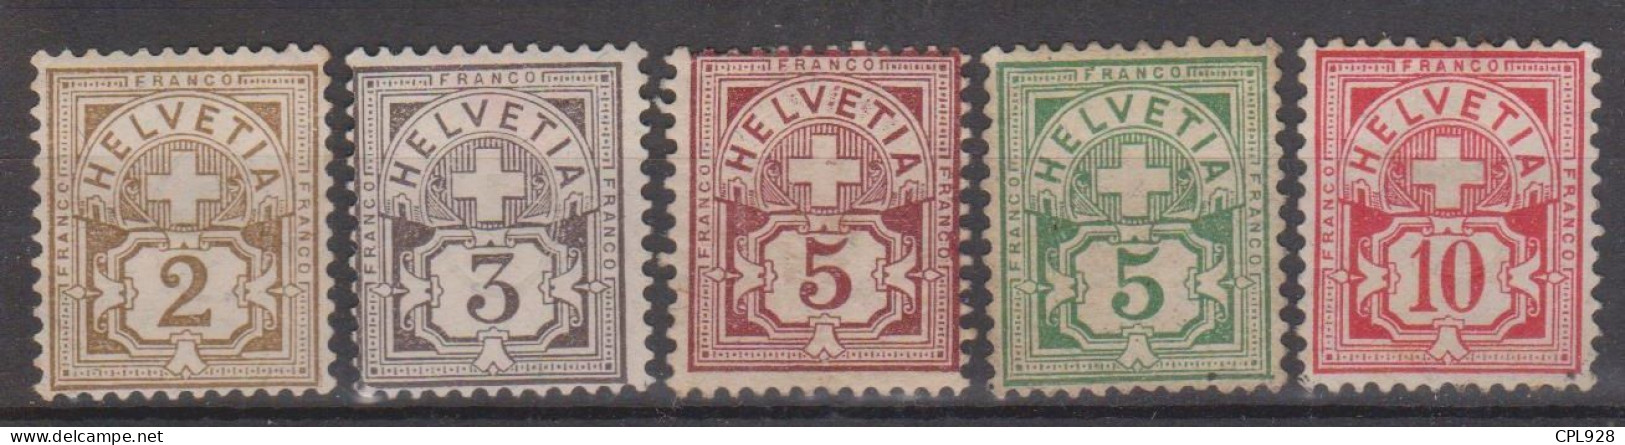 Suisse N° 63 à 67 Avec Charnières - Unused Stamps